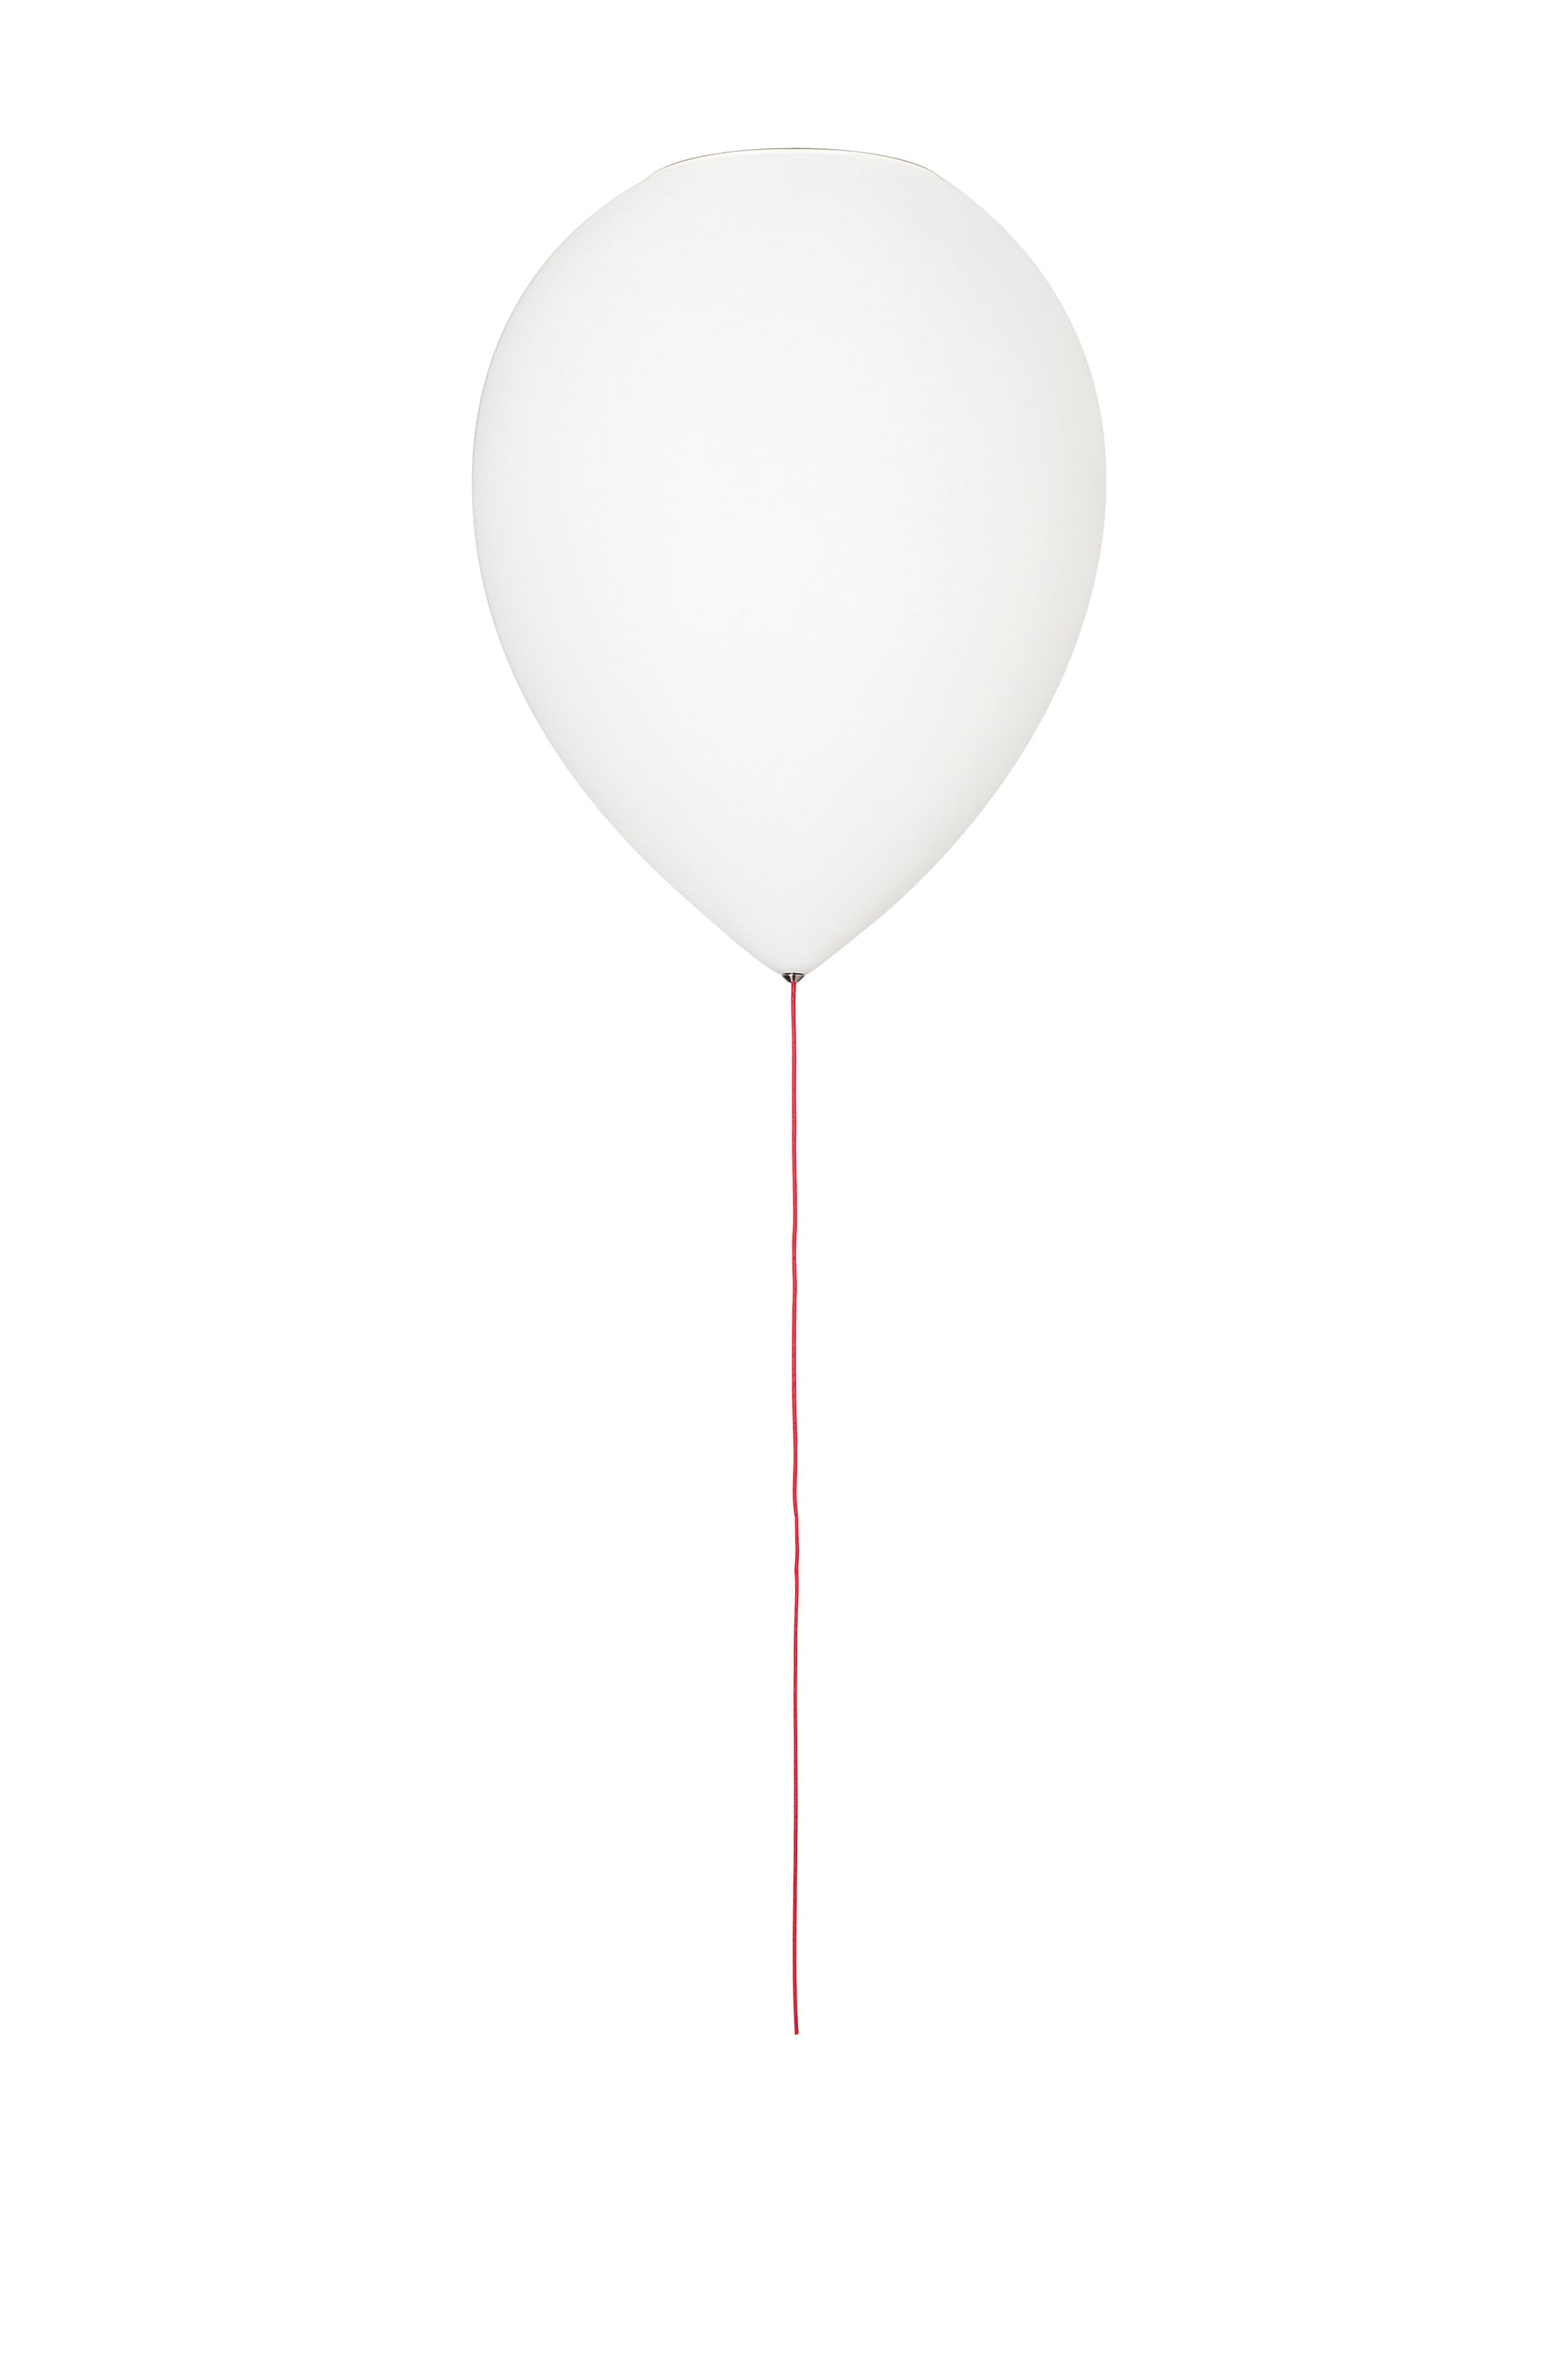 Estiluz - balloon A-3050-74 Wit